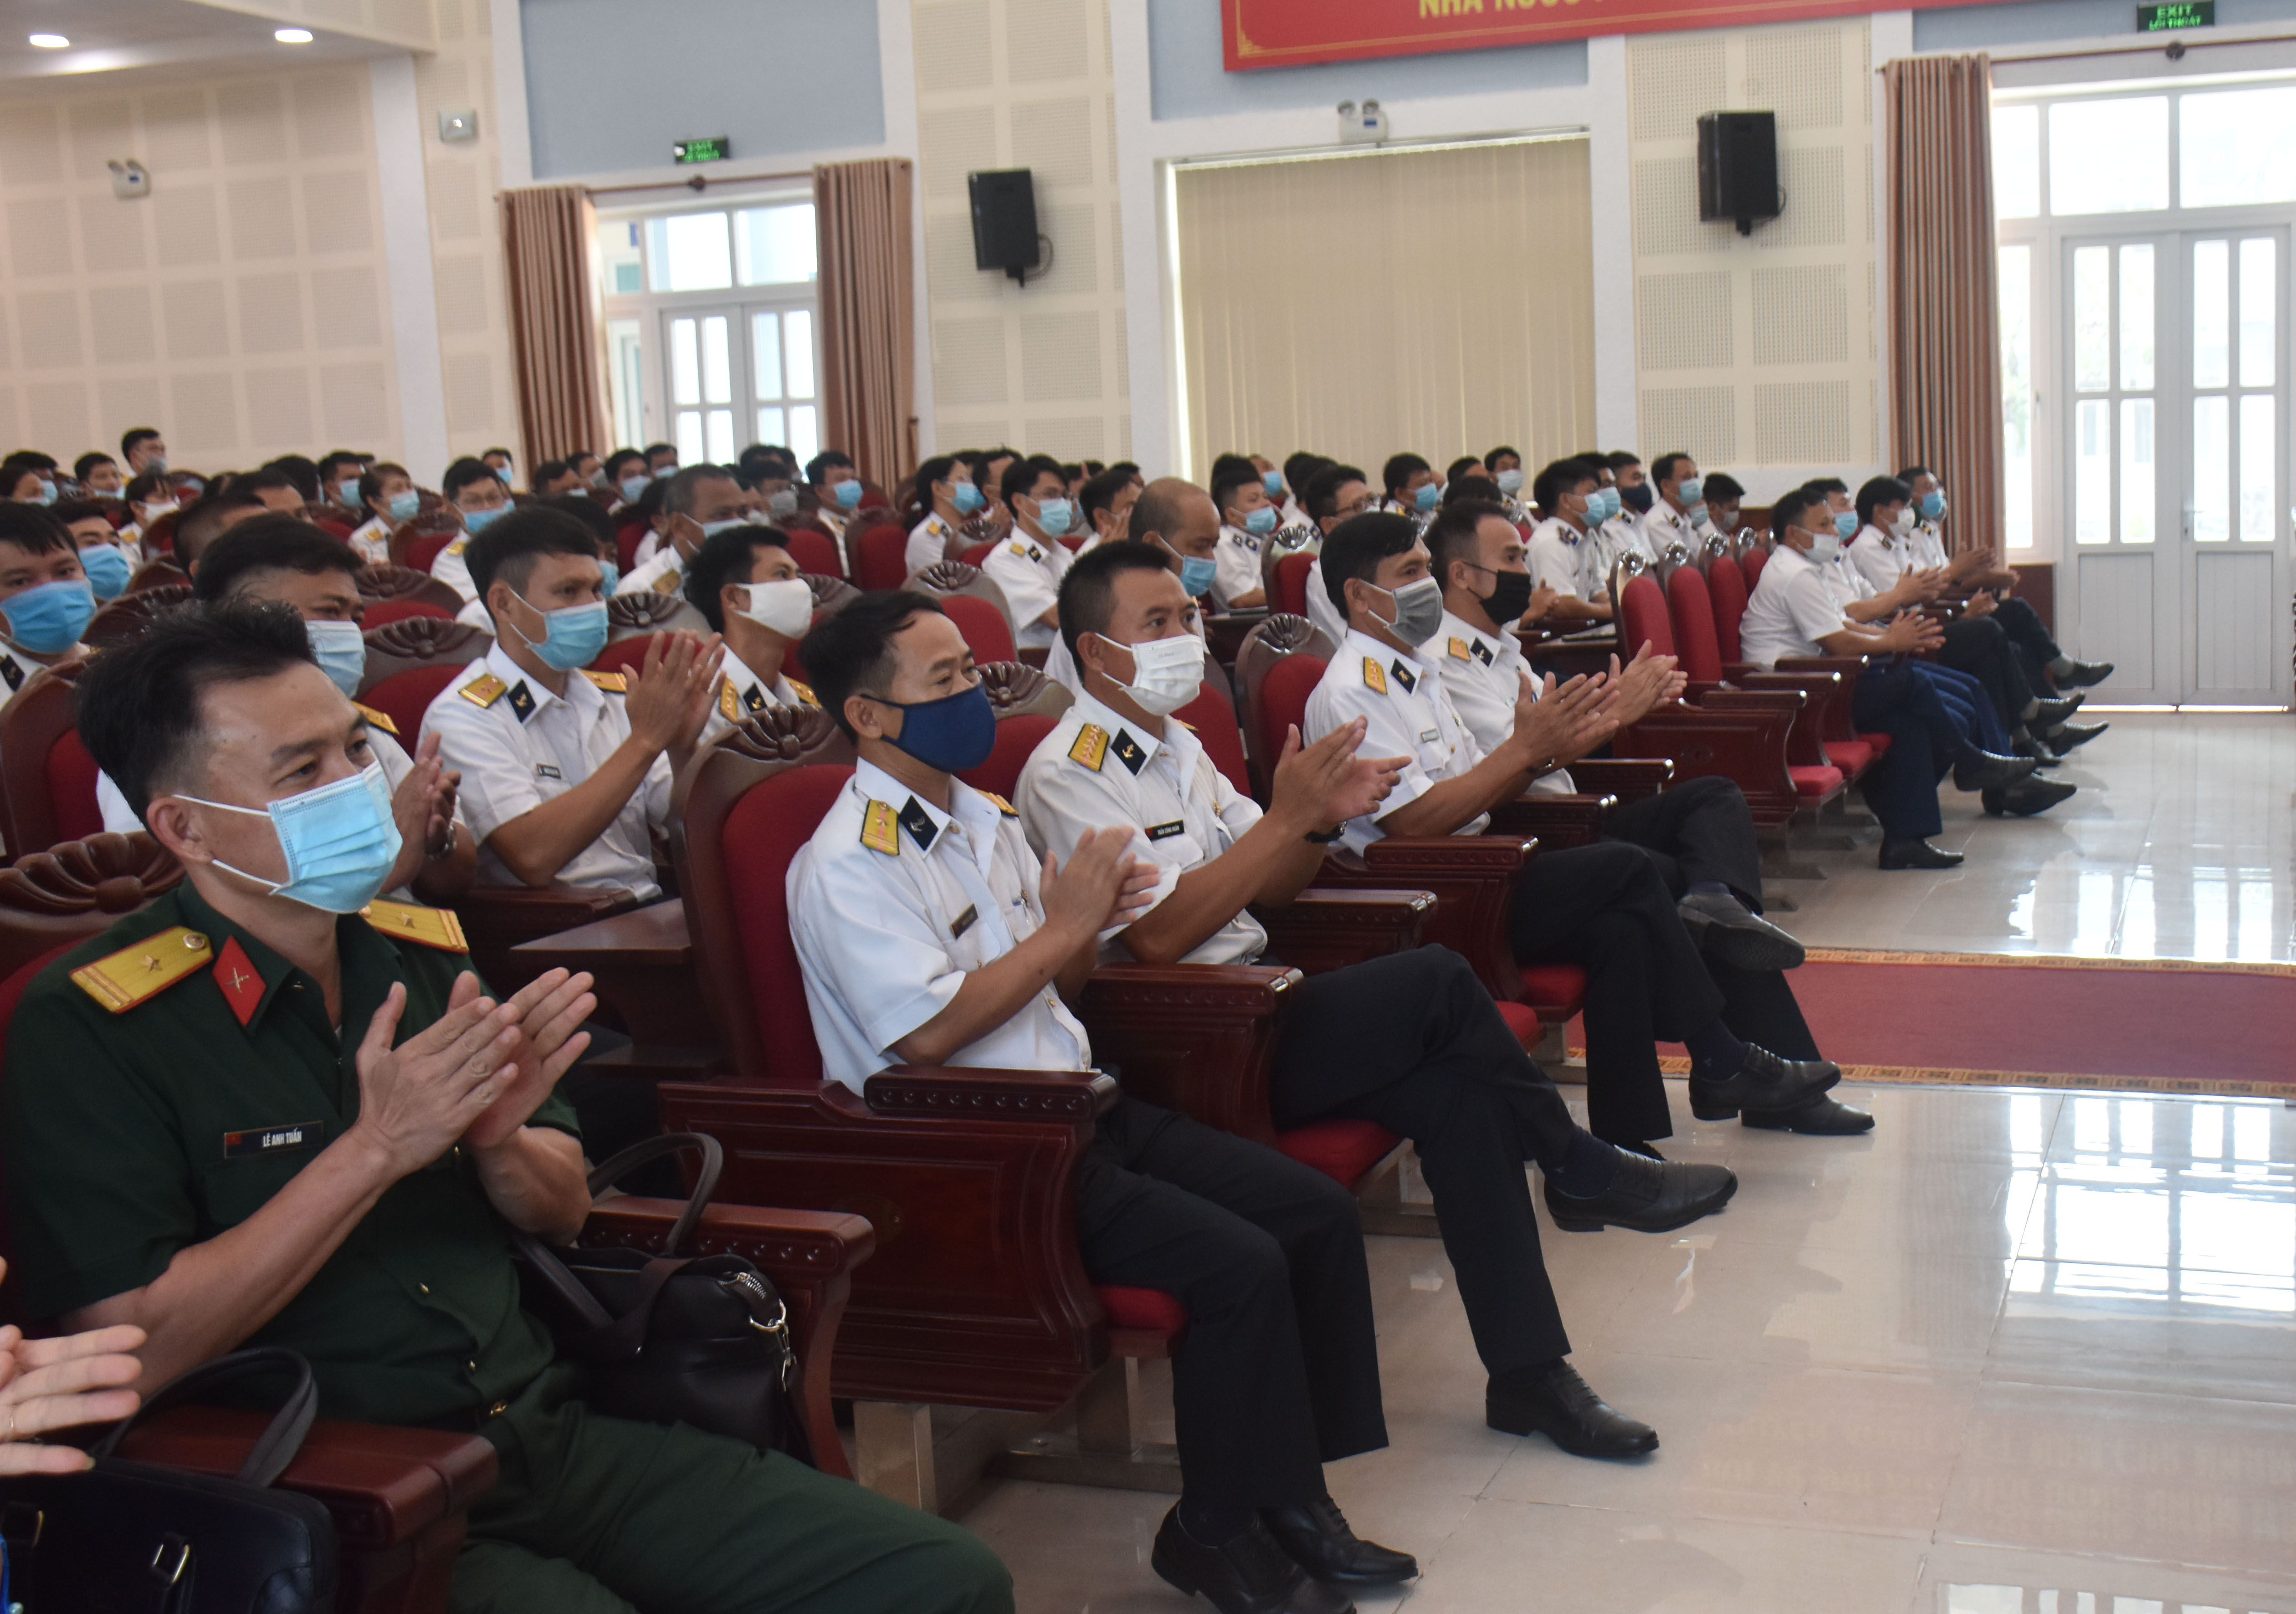 Các cử tri tham gia Hội nghị Tiếp xúc vận động bầu cử tại Lữ đoàn 171 Hải quân  (phường 11, TP. Vũng Tàu) tuân thủ quy định phòng, chống dịch COVID-19. 